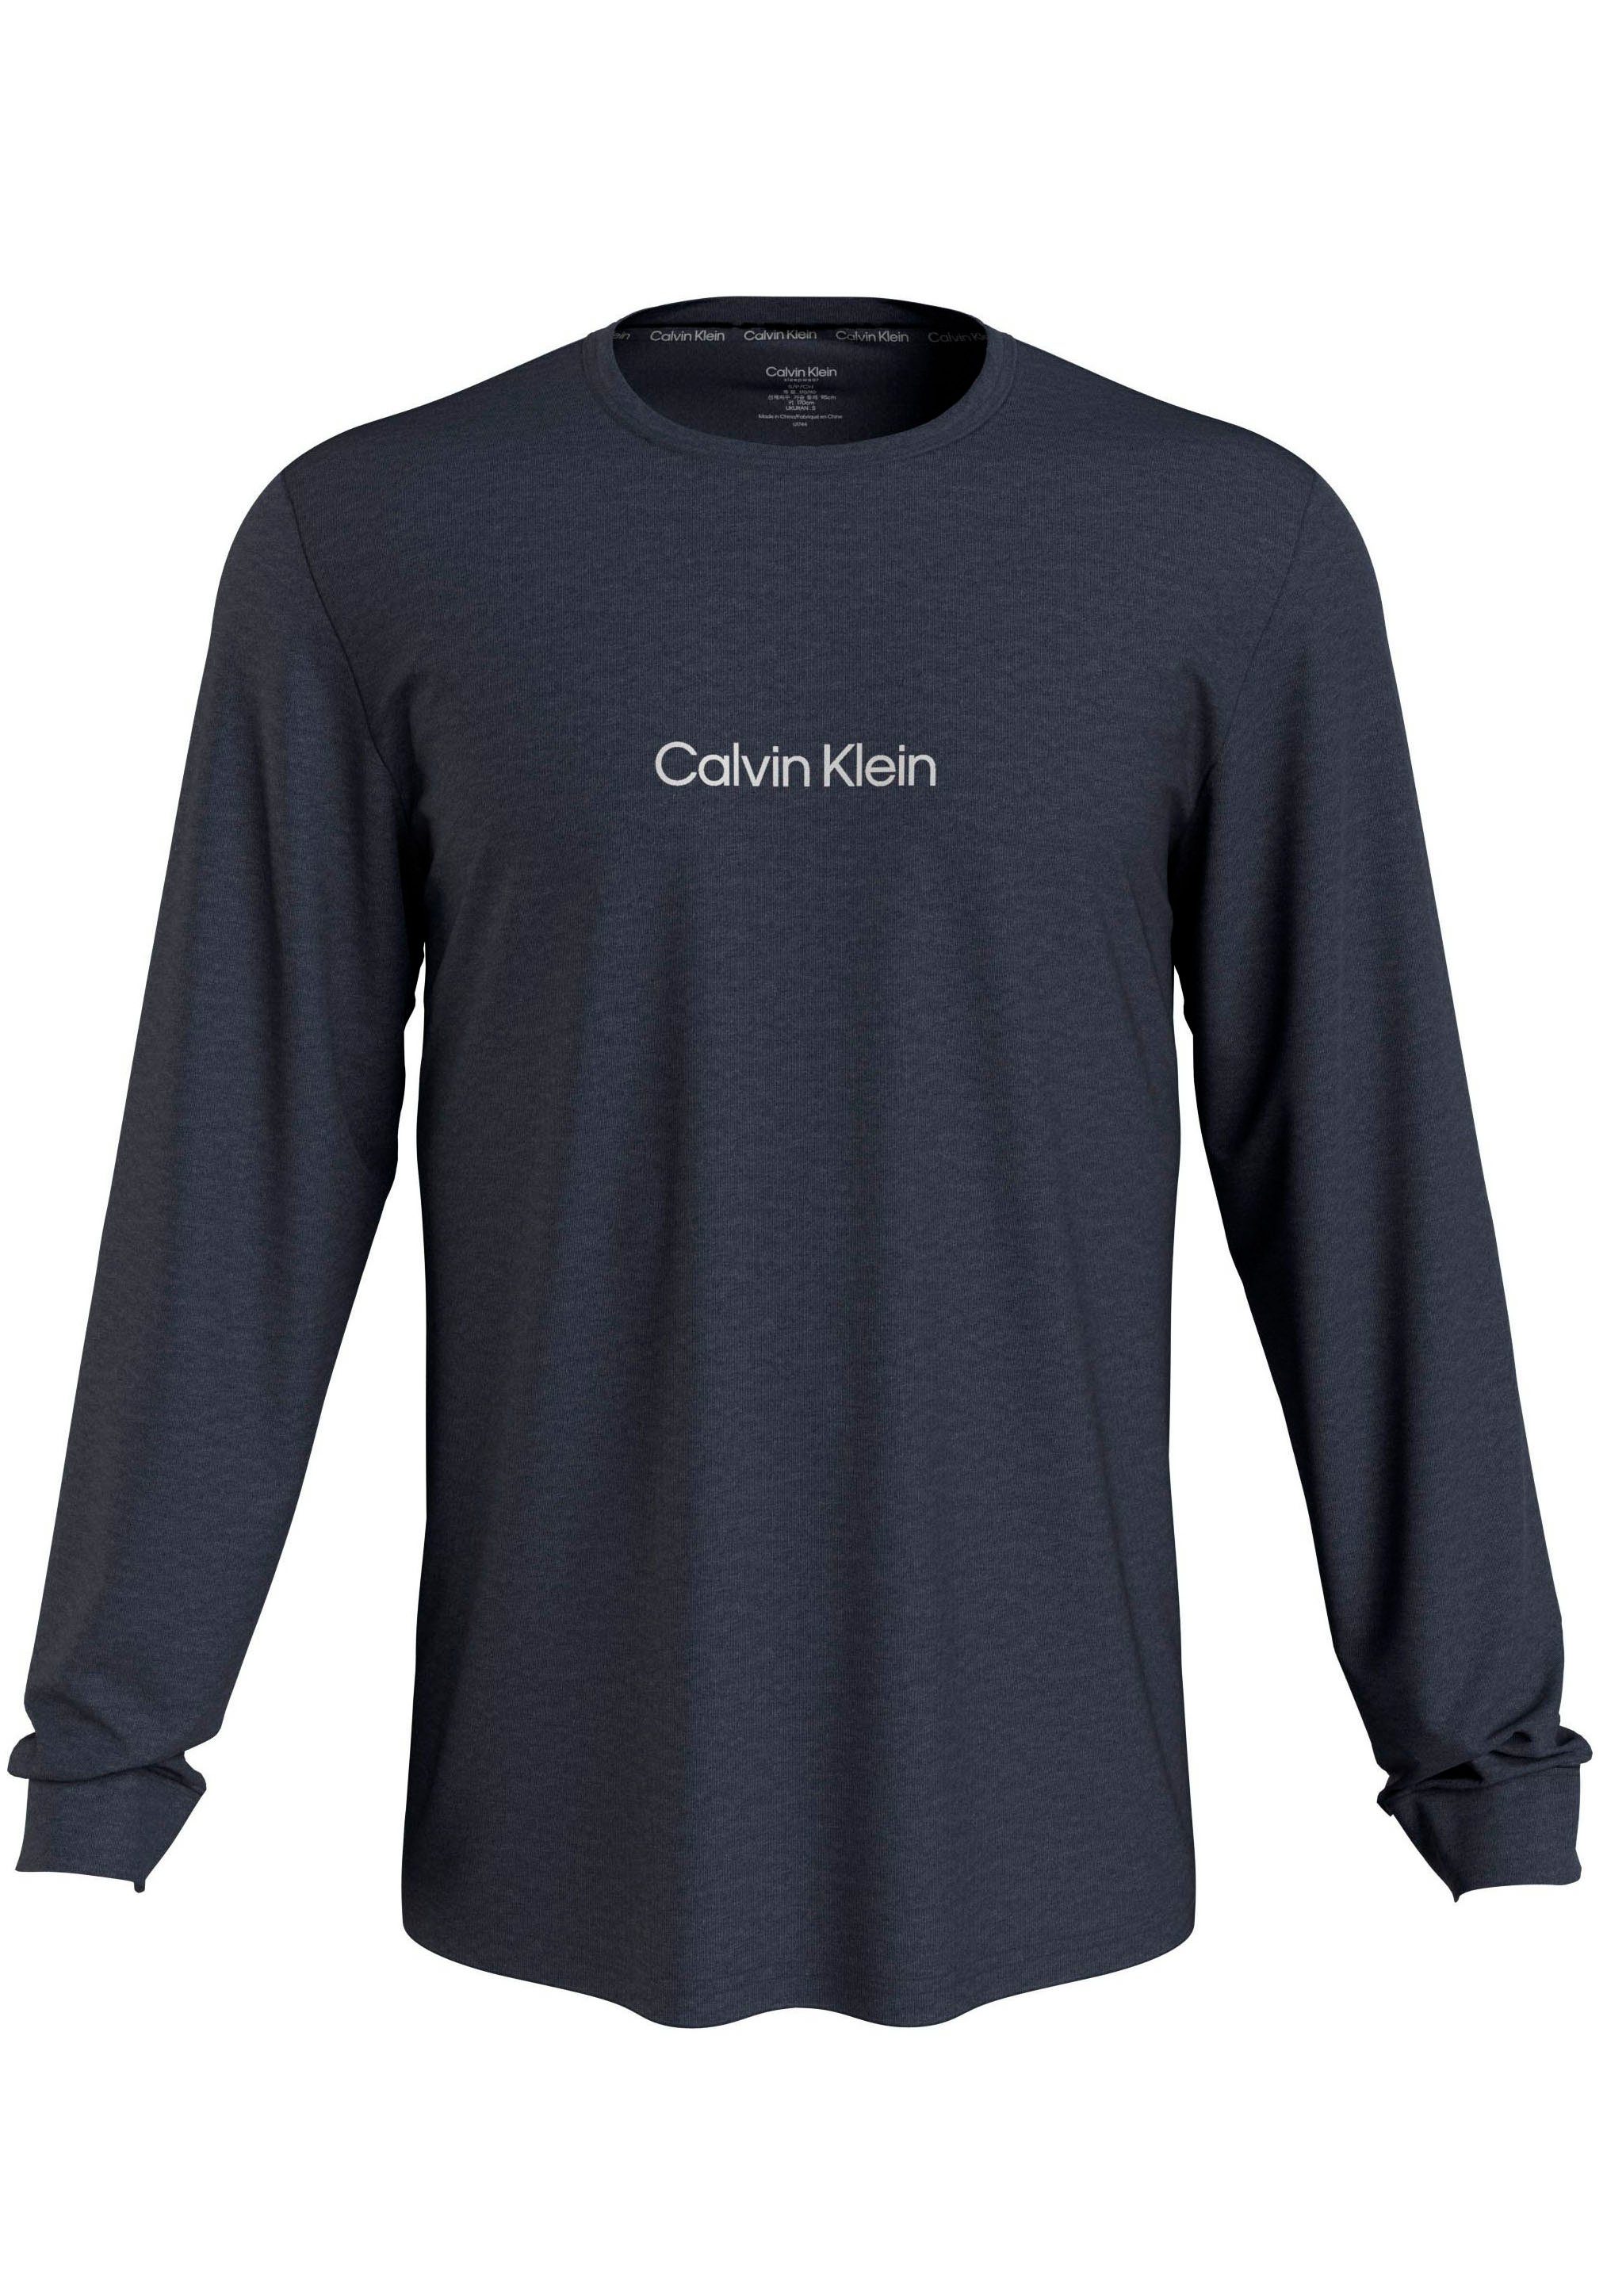 Underwear auf Brust NECK BLUEBERRY Klein Calvin CREW der L/S Logodruck mit T-Shirt